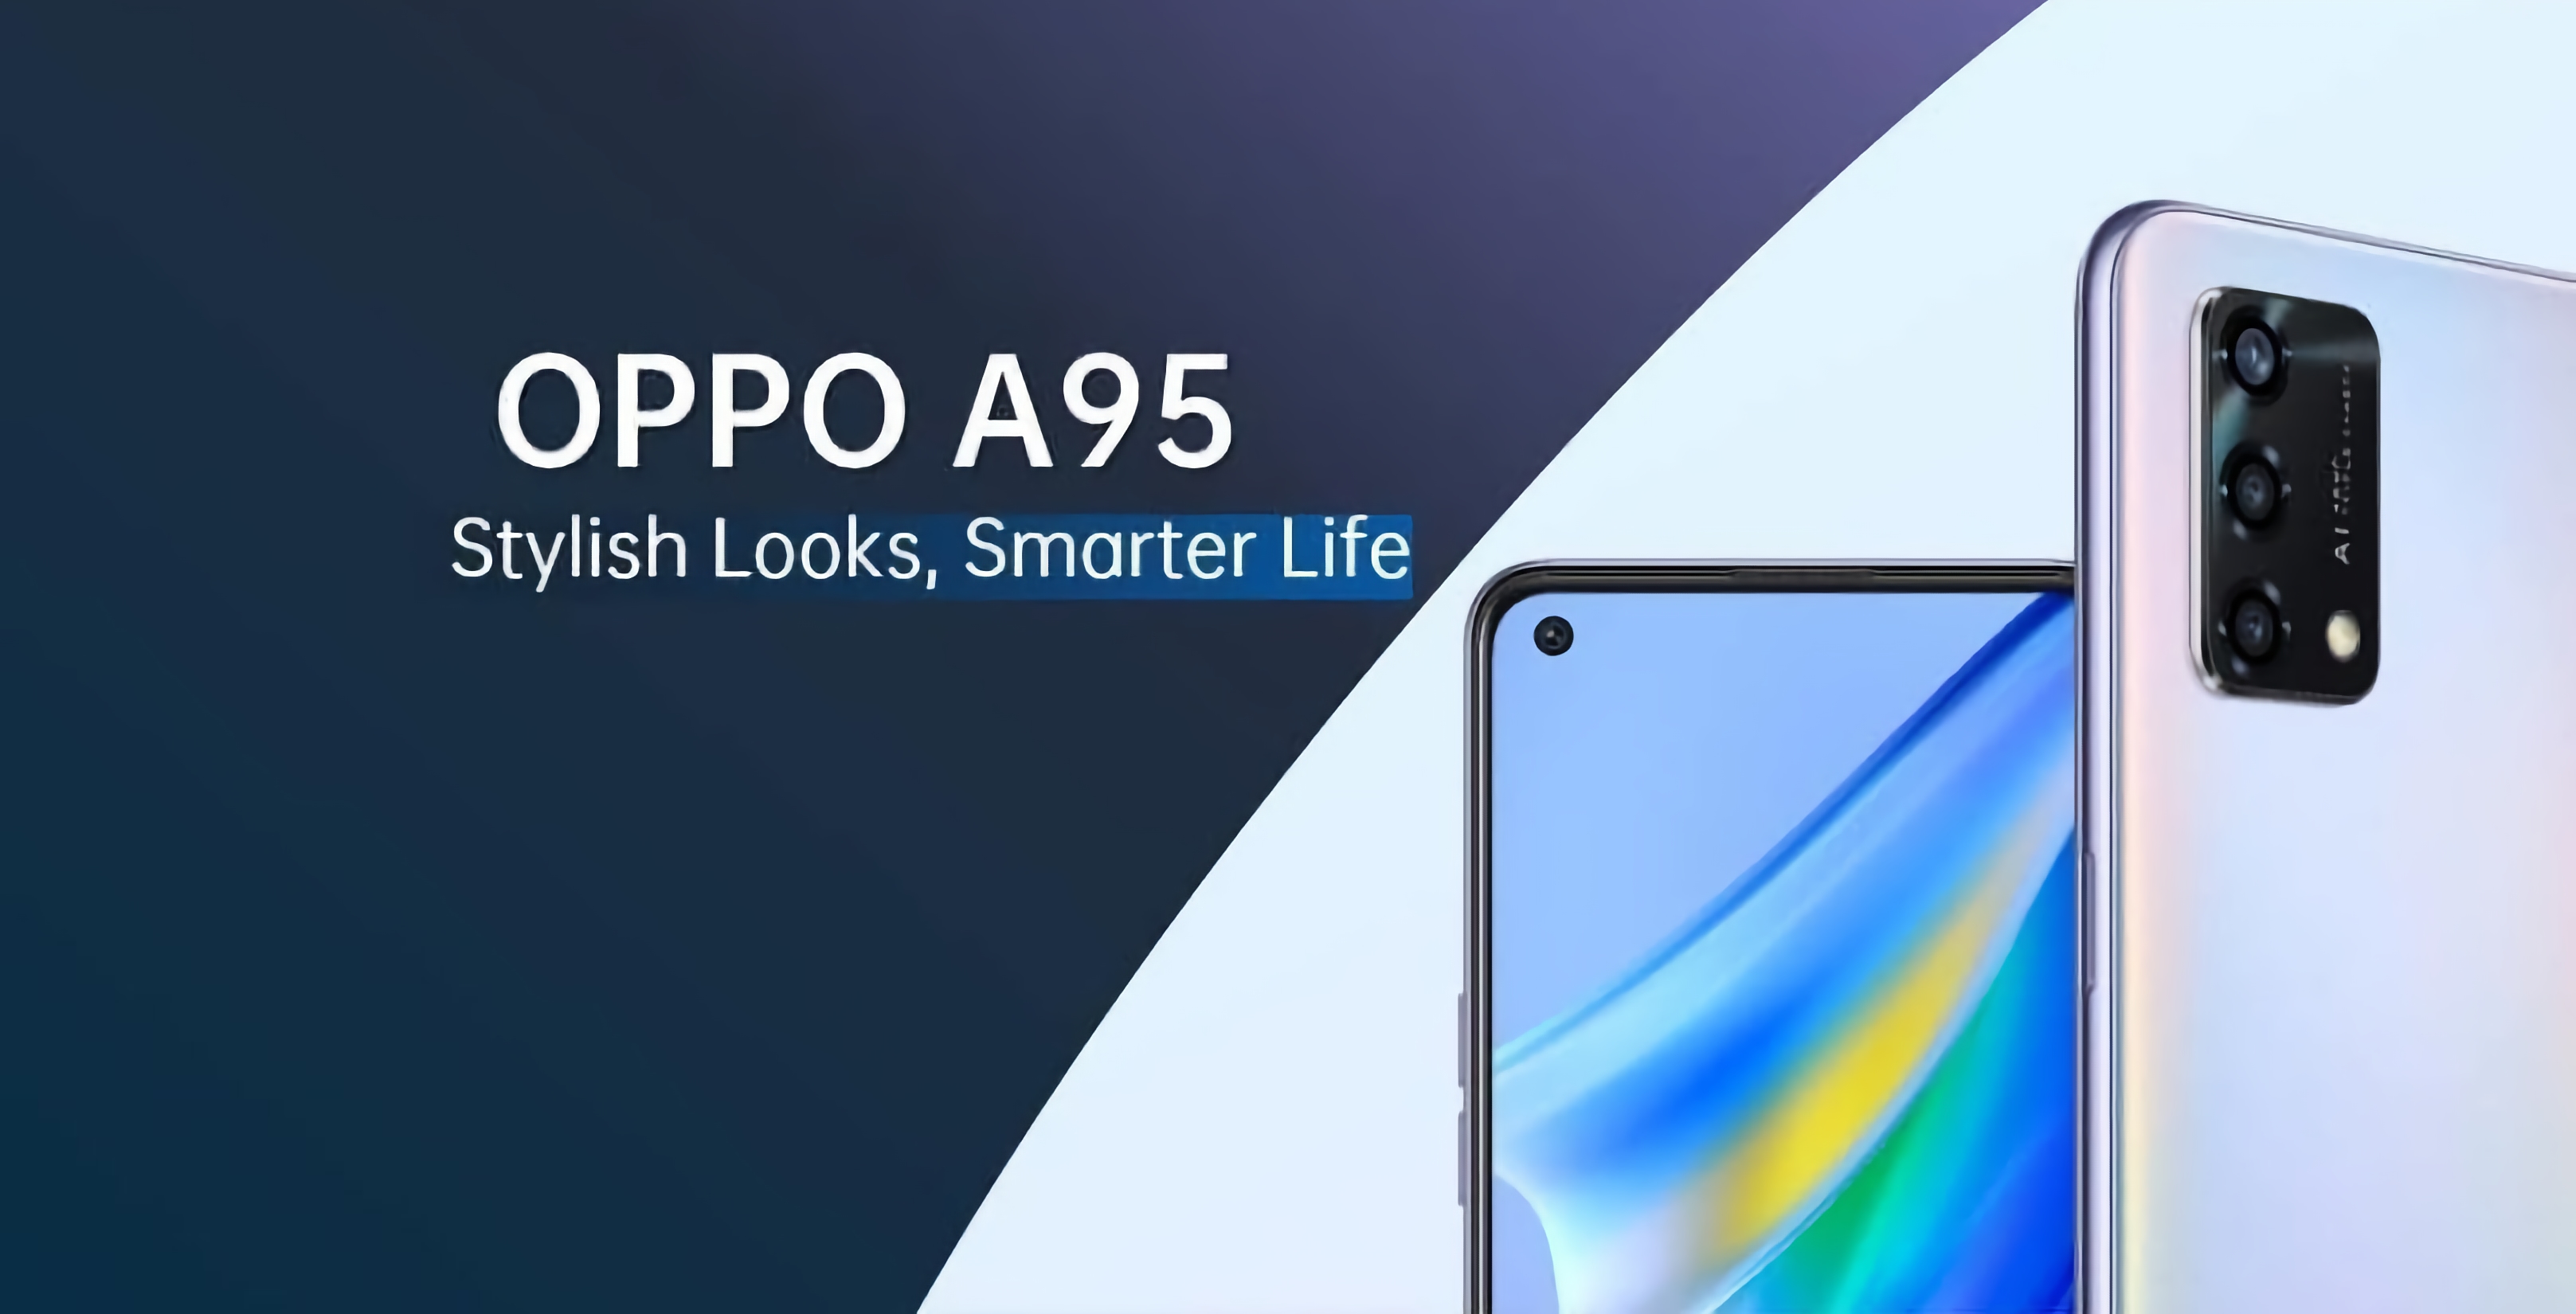 OPPO A95 con chip Snapdragon 662, batteria da 5000mAh e ricarica veloce da 33W sarà presentato questo mese